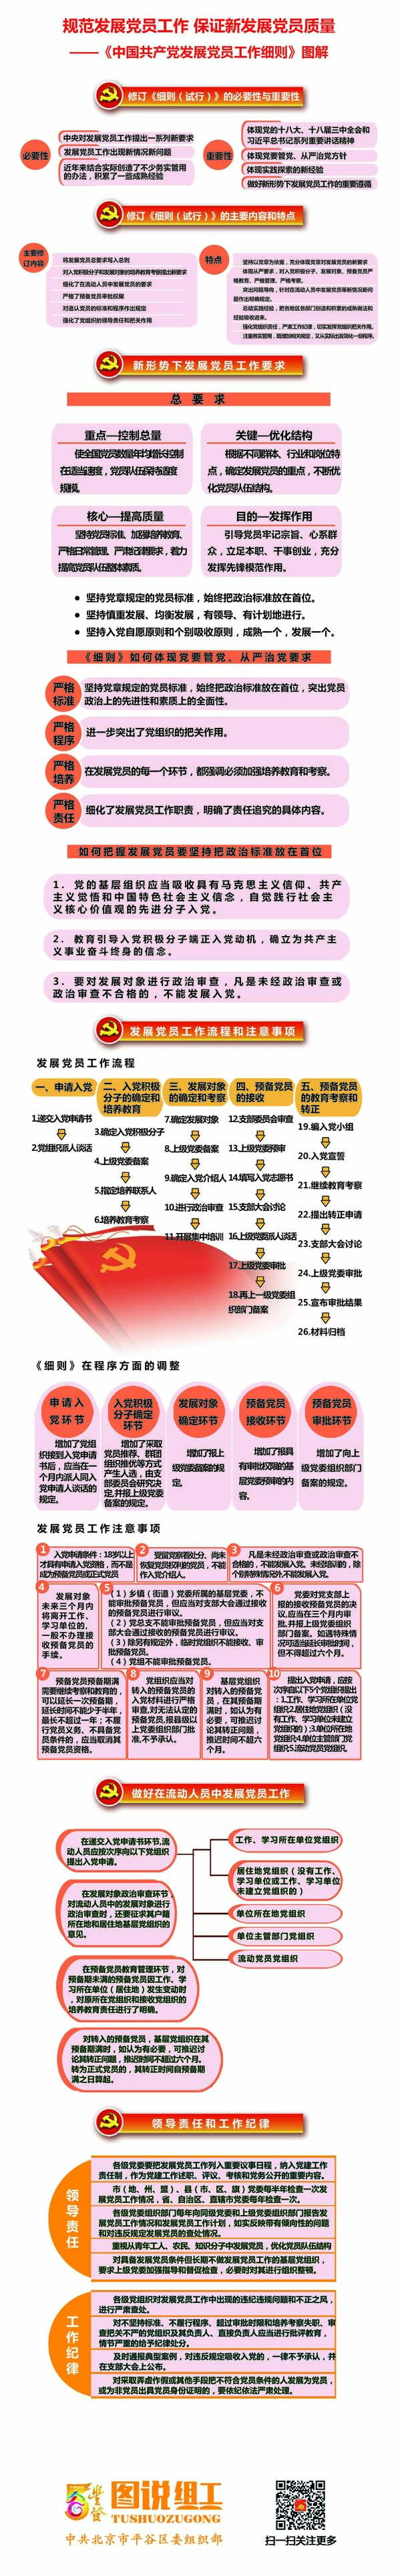 《中国共产党发展党员工作细则》图解